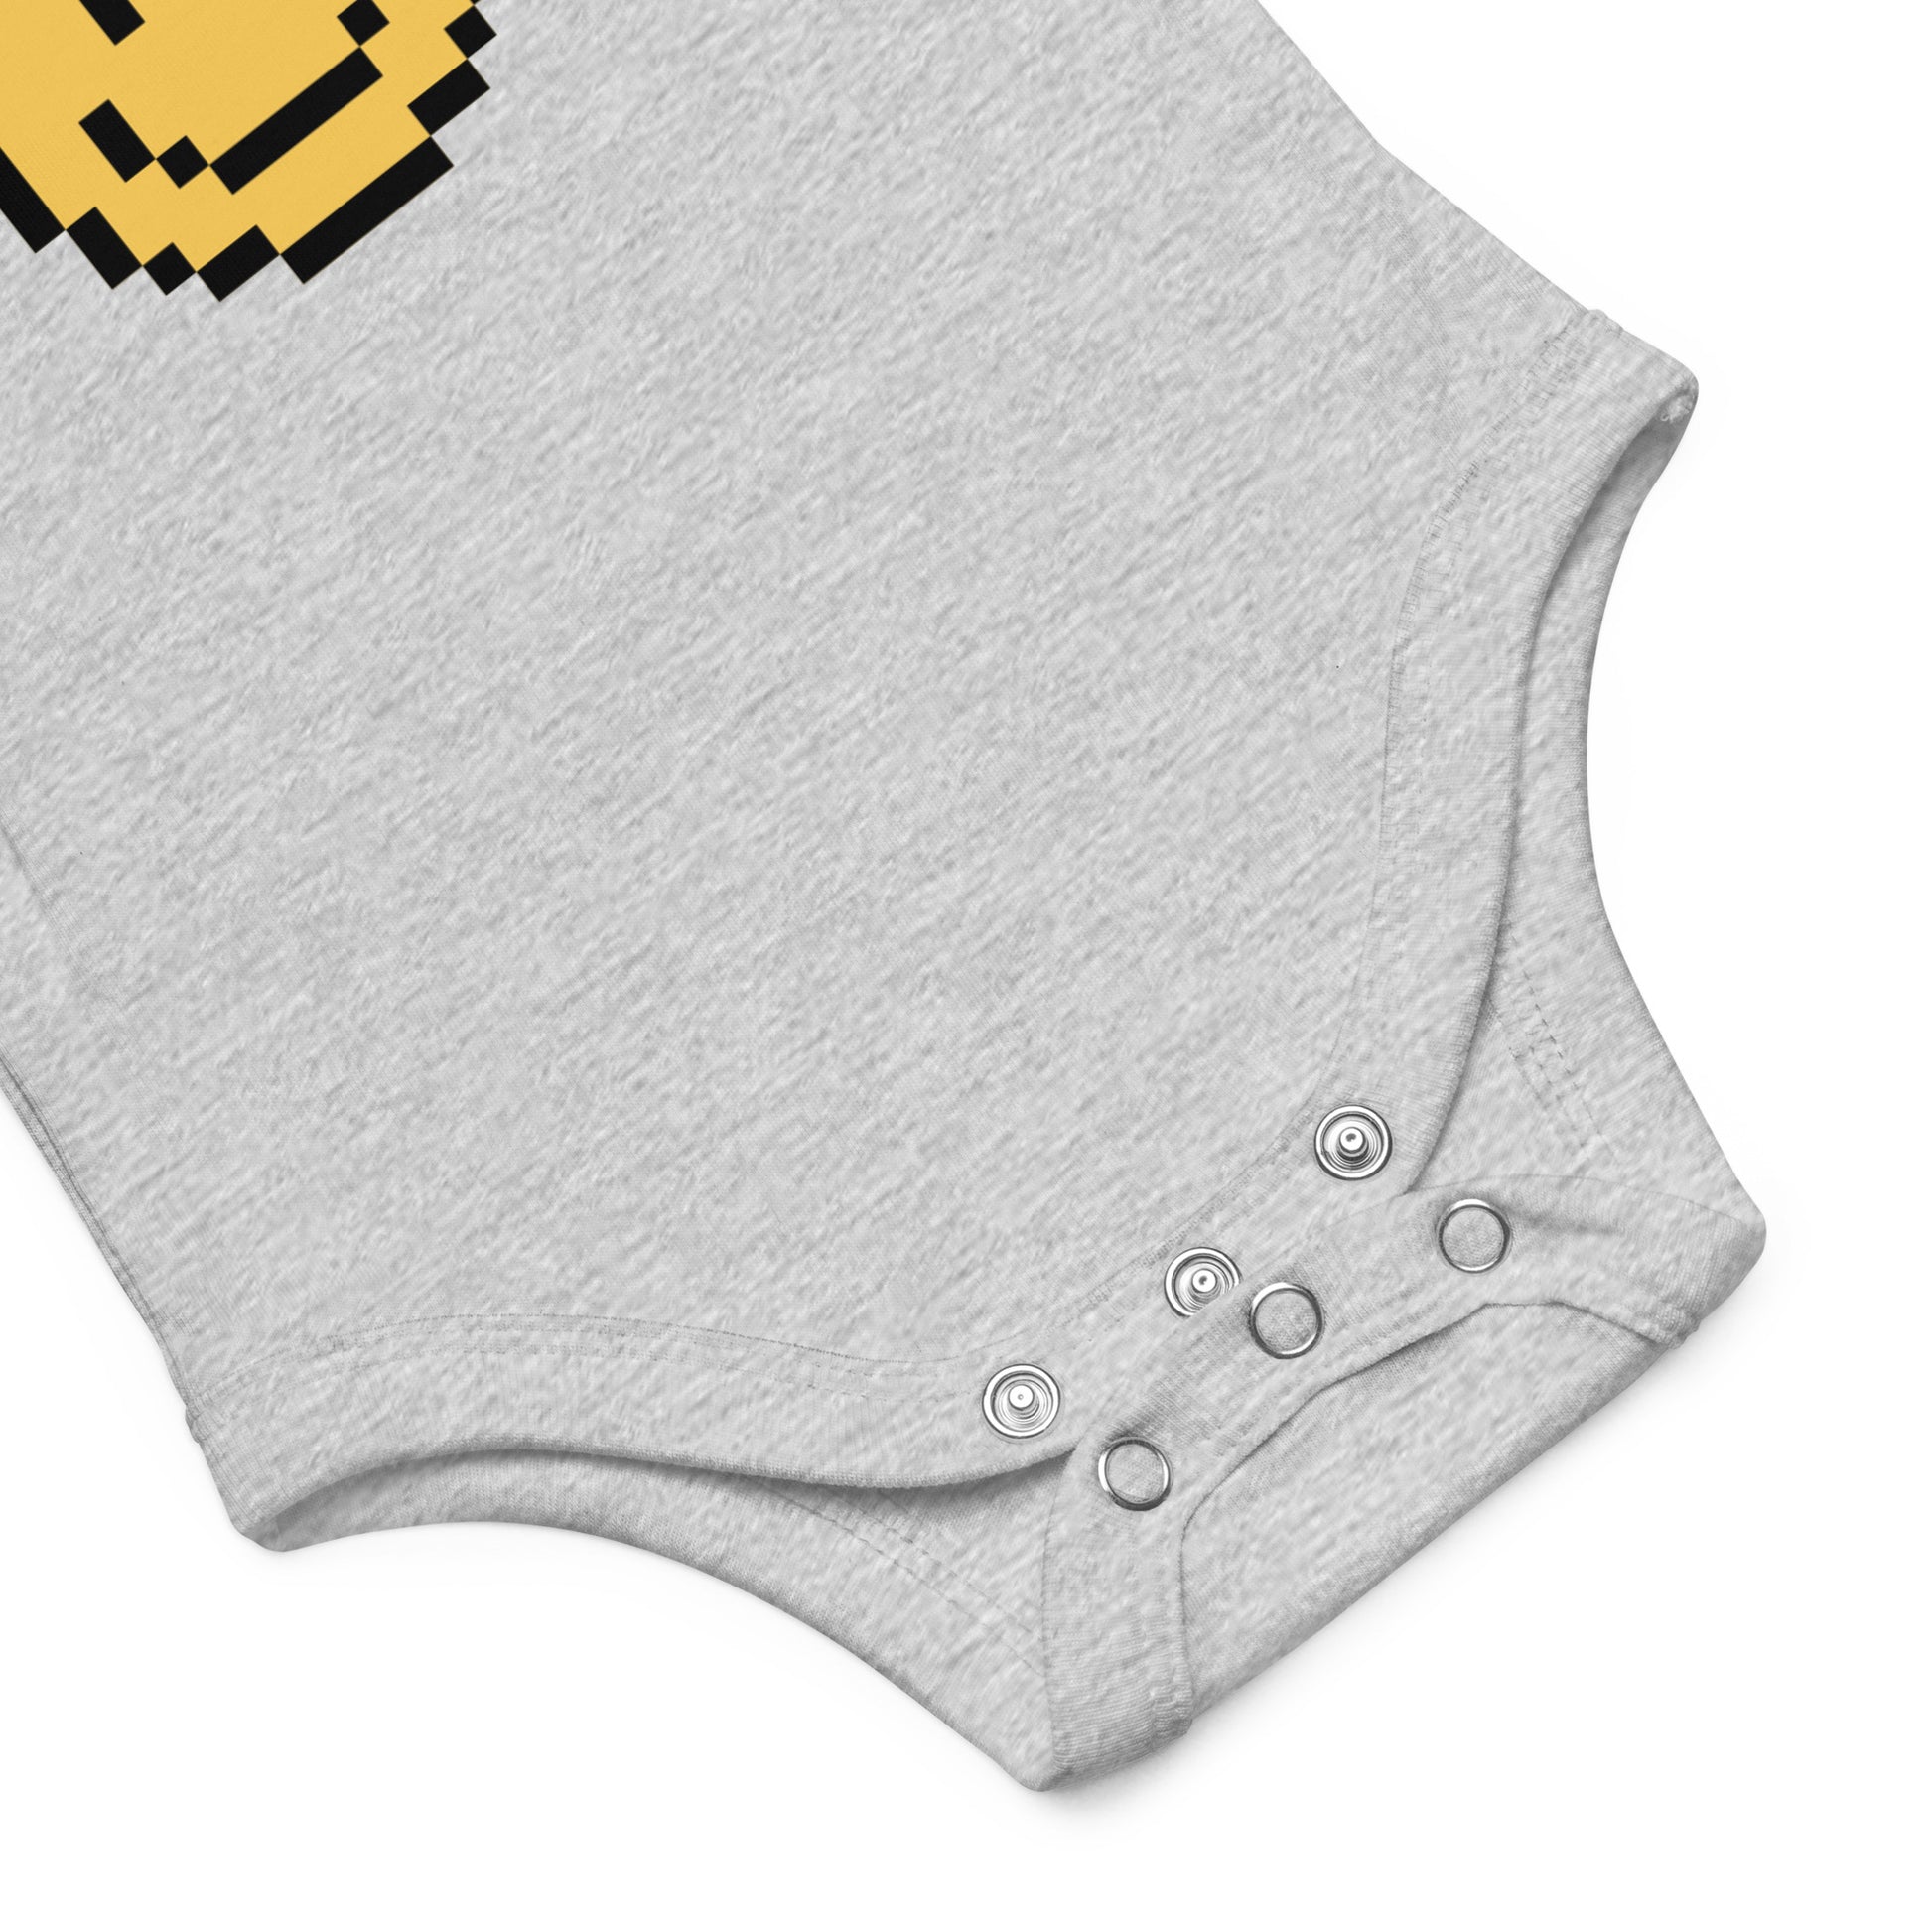  vauvan body vauvan vaatteet netistä